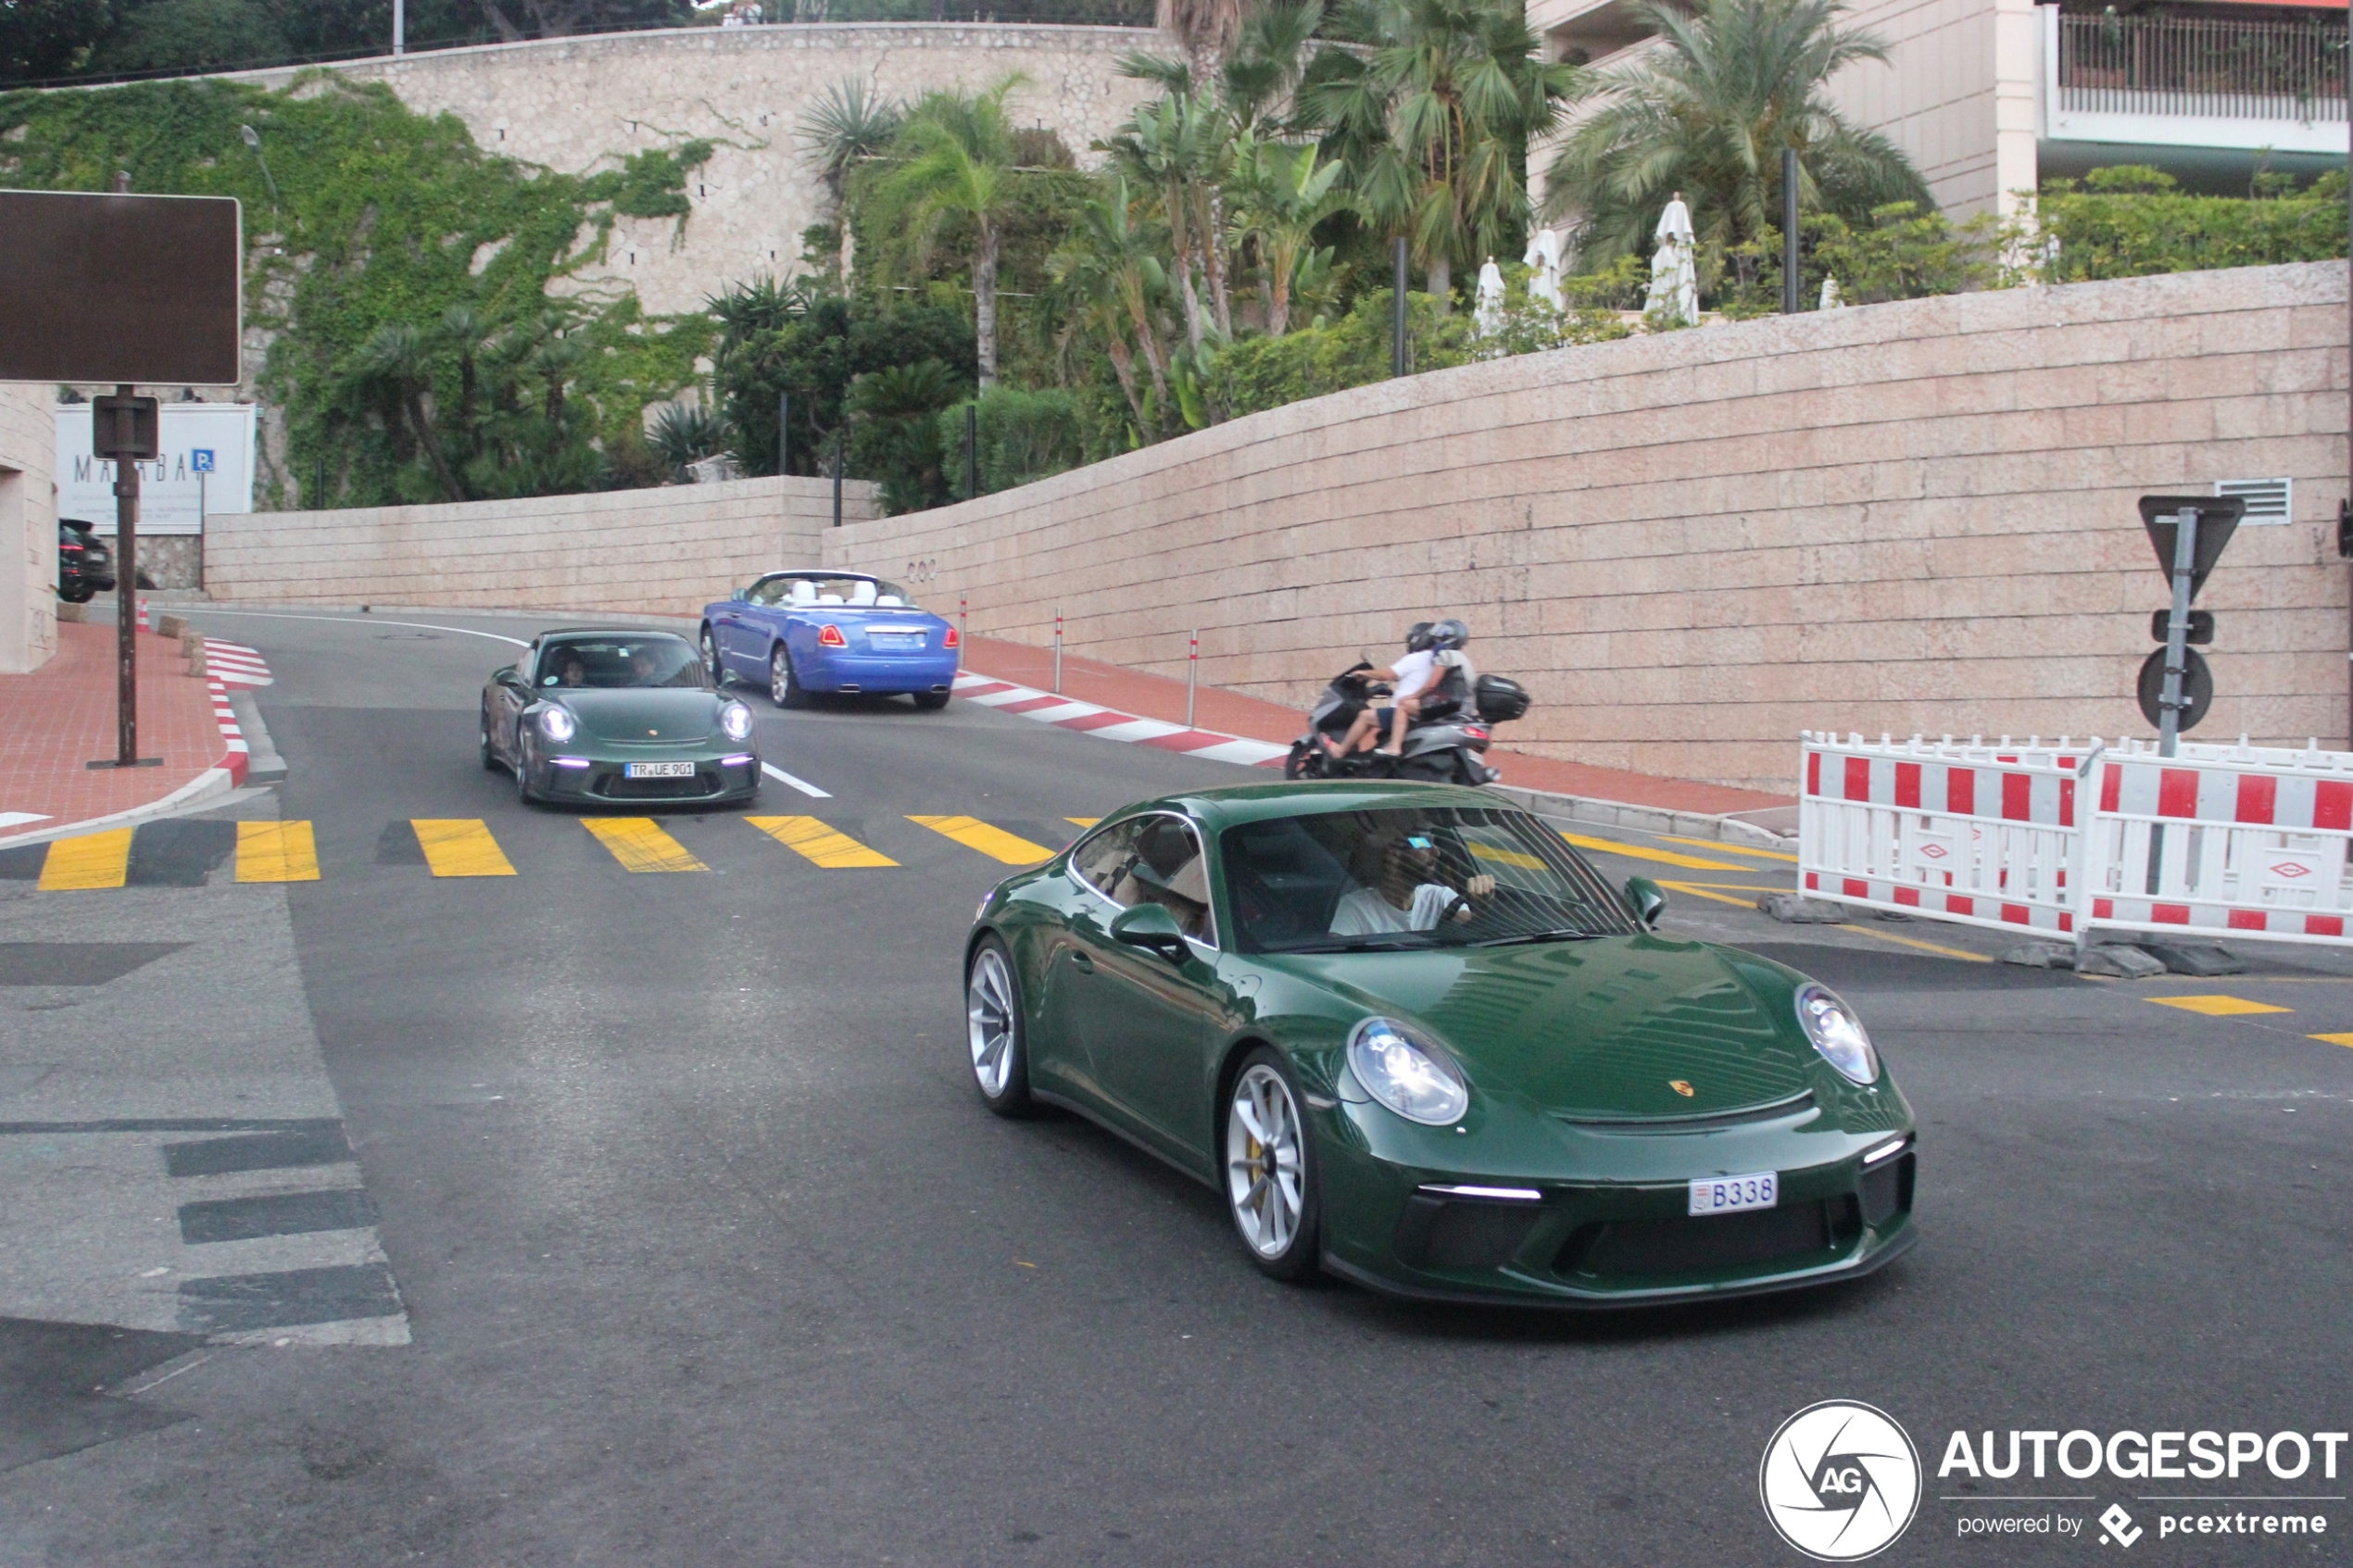 Irish Green Porsche duo ravot door Monaco